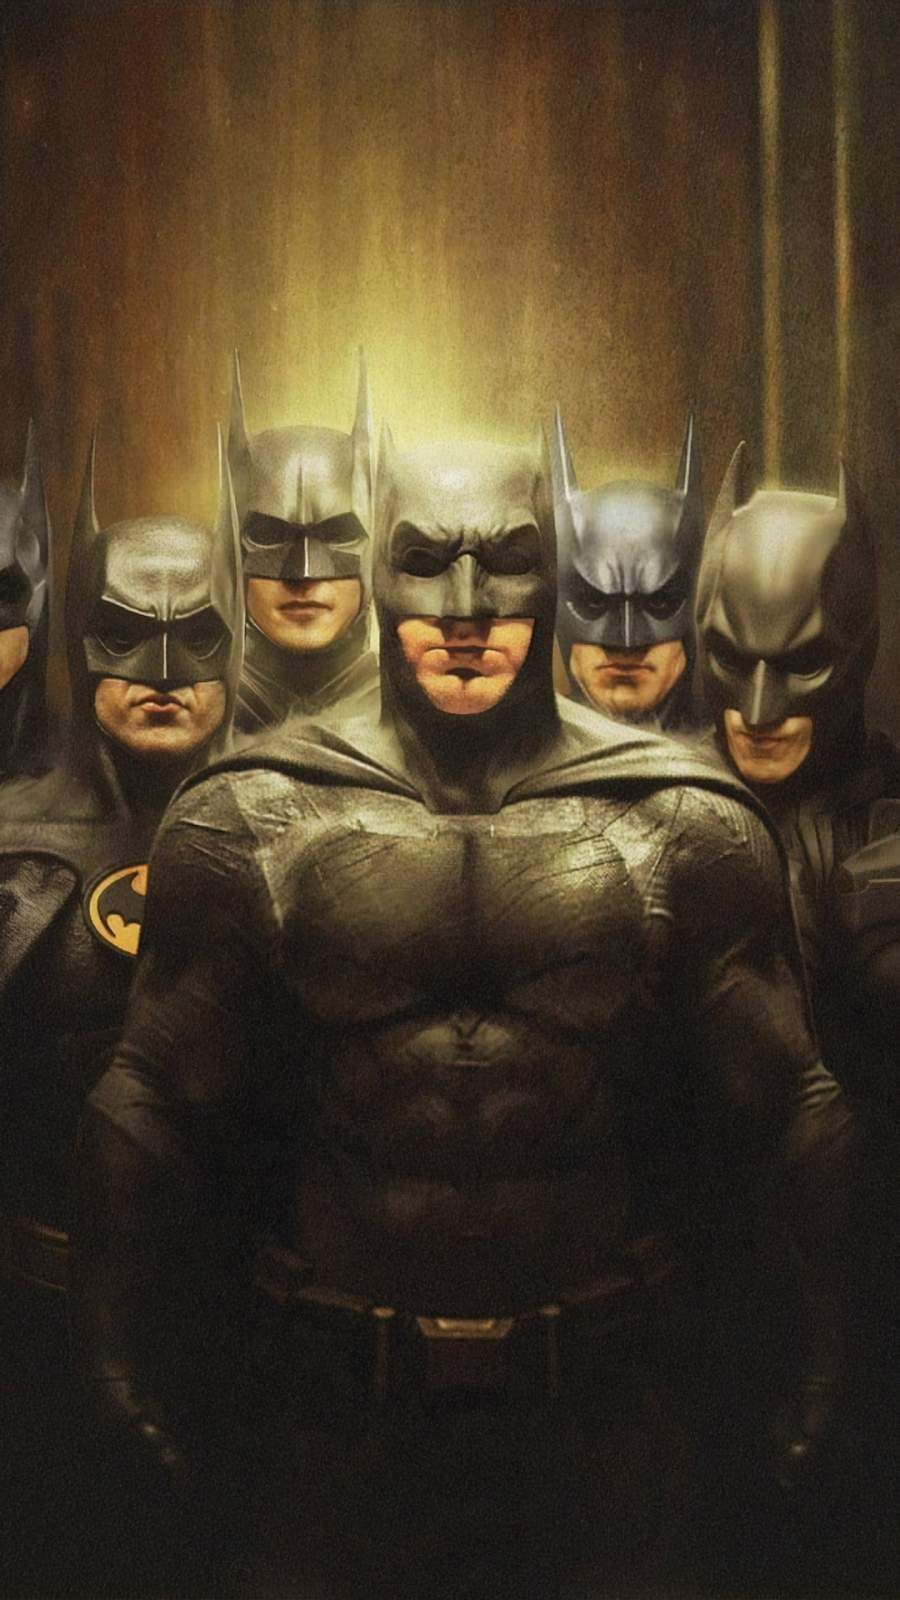 Batman Squad IPhone Wallpaper #wallpaper #wallpaper